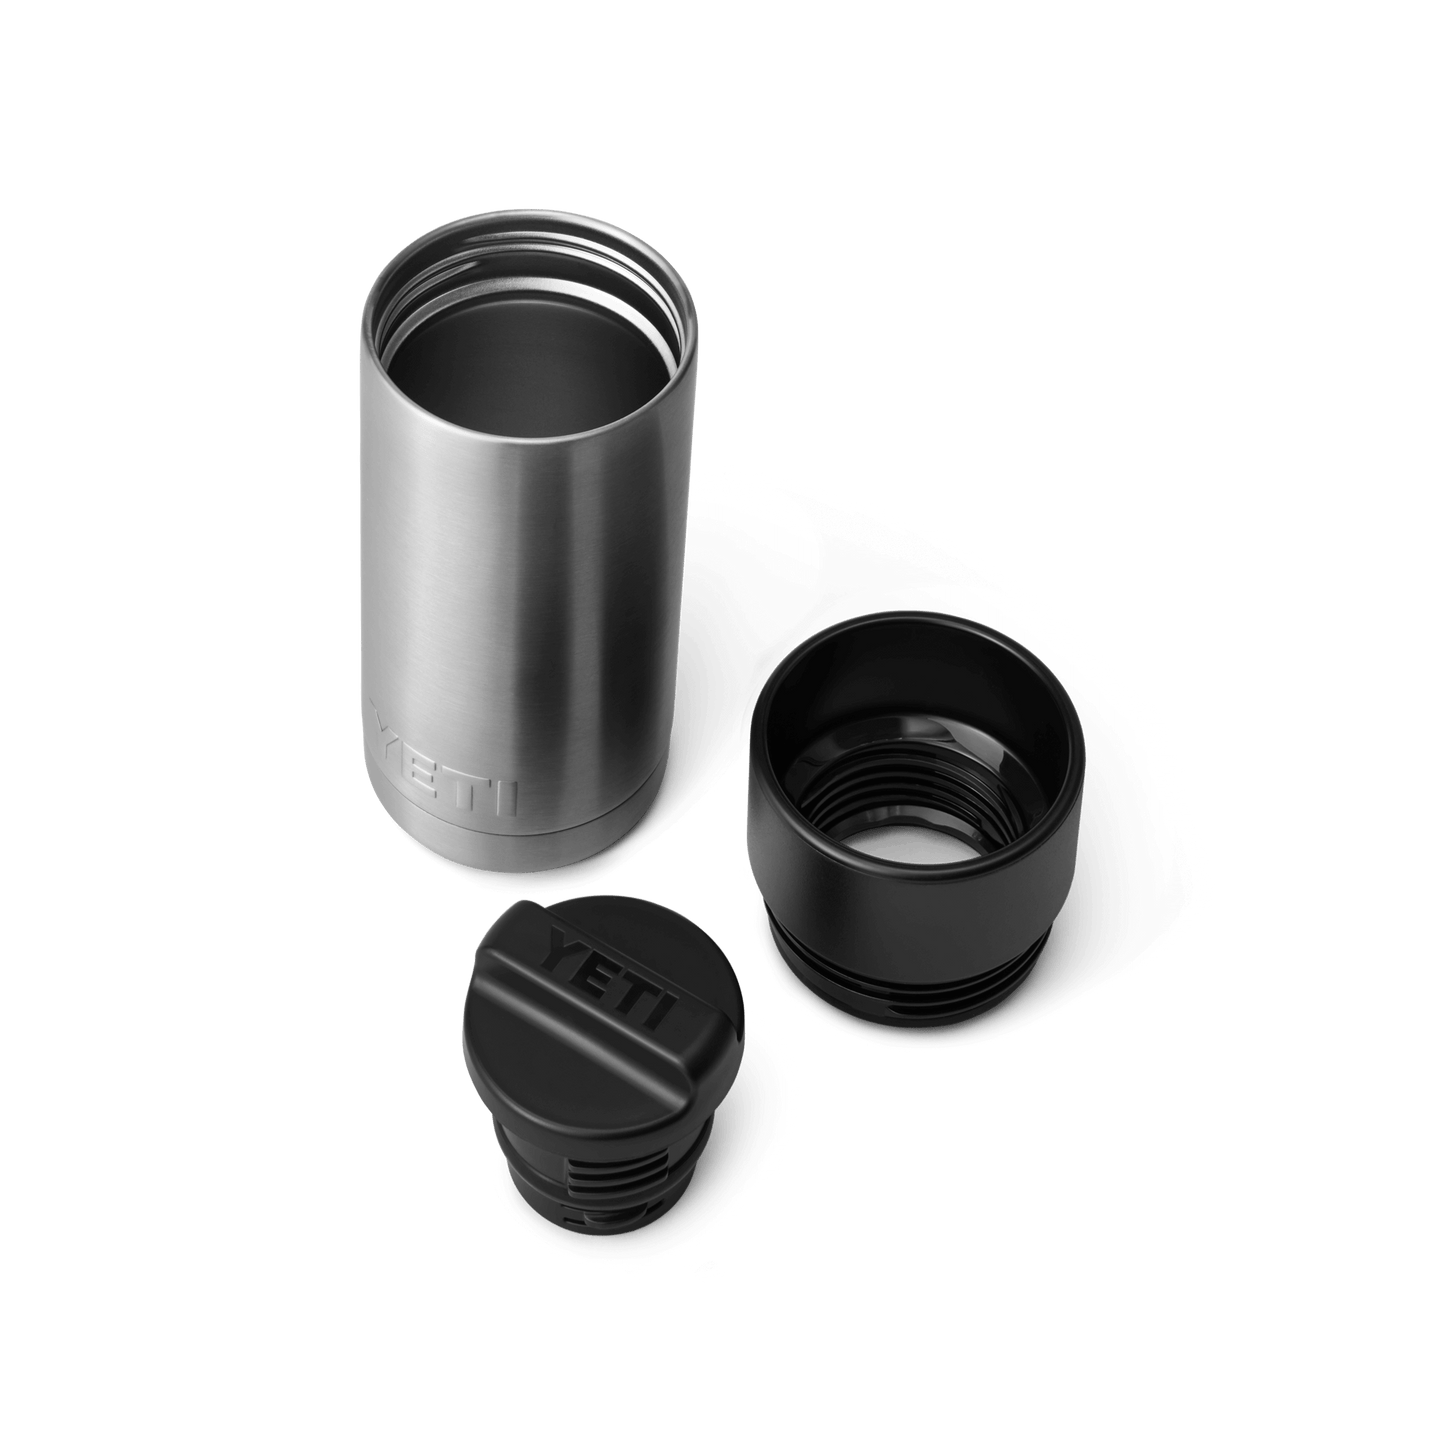 YETI Rambler® 12 oz Flasche mit HotShot-Deckel (354 ml) Stainless Steel